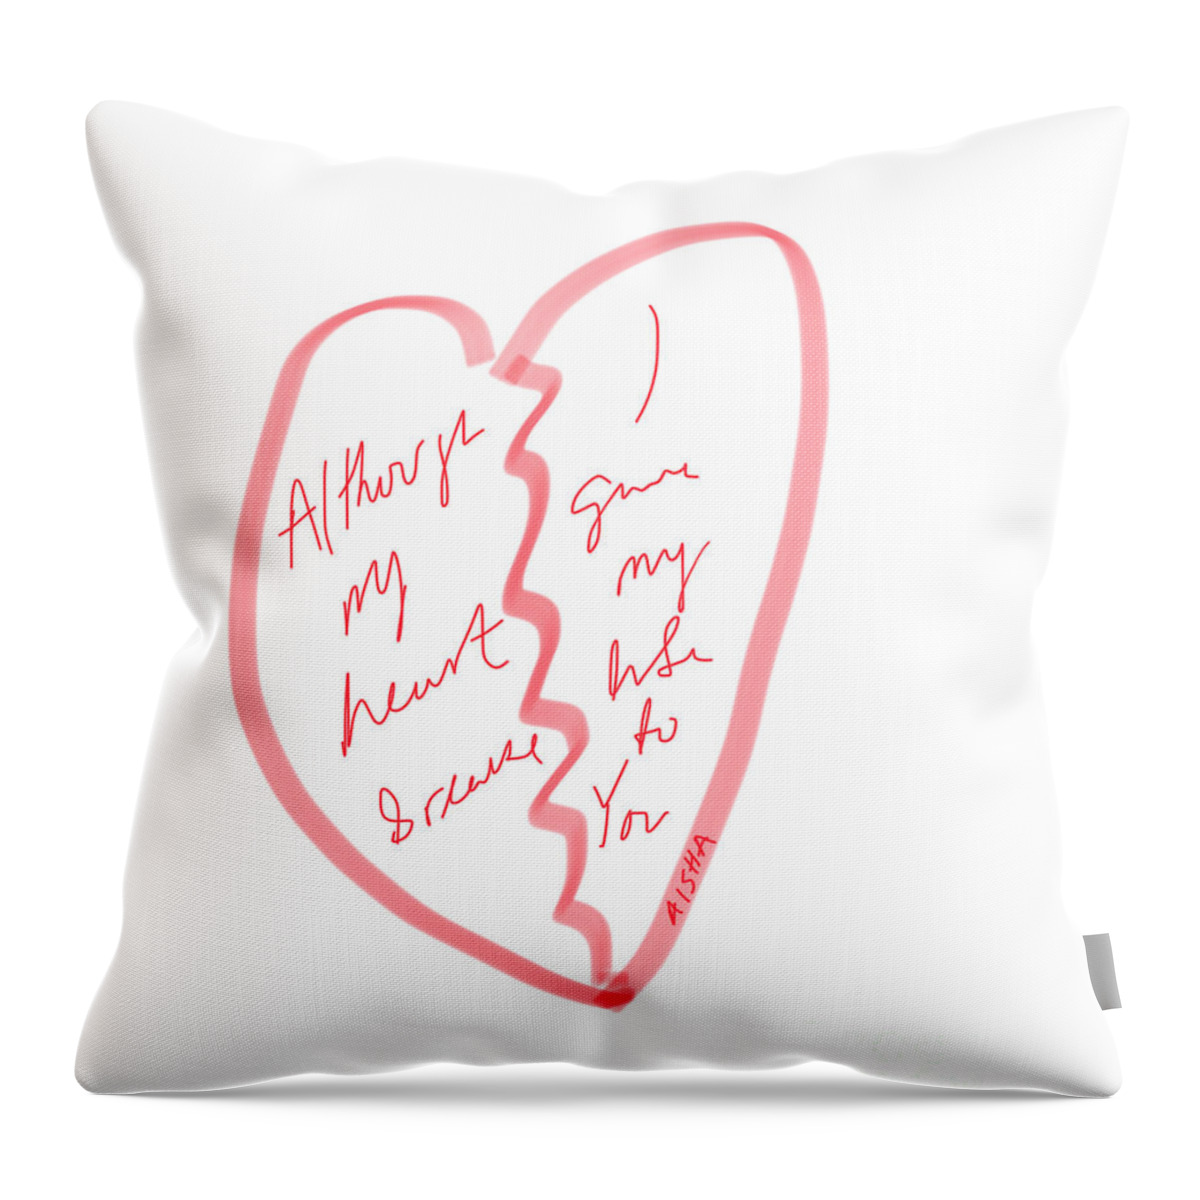 Broken Throw Pillow featuring the digital art Heart Break by Aisha Isabelle